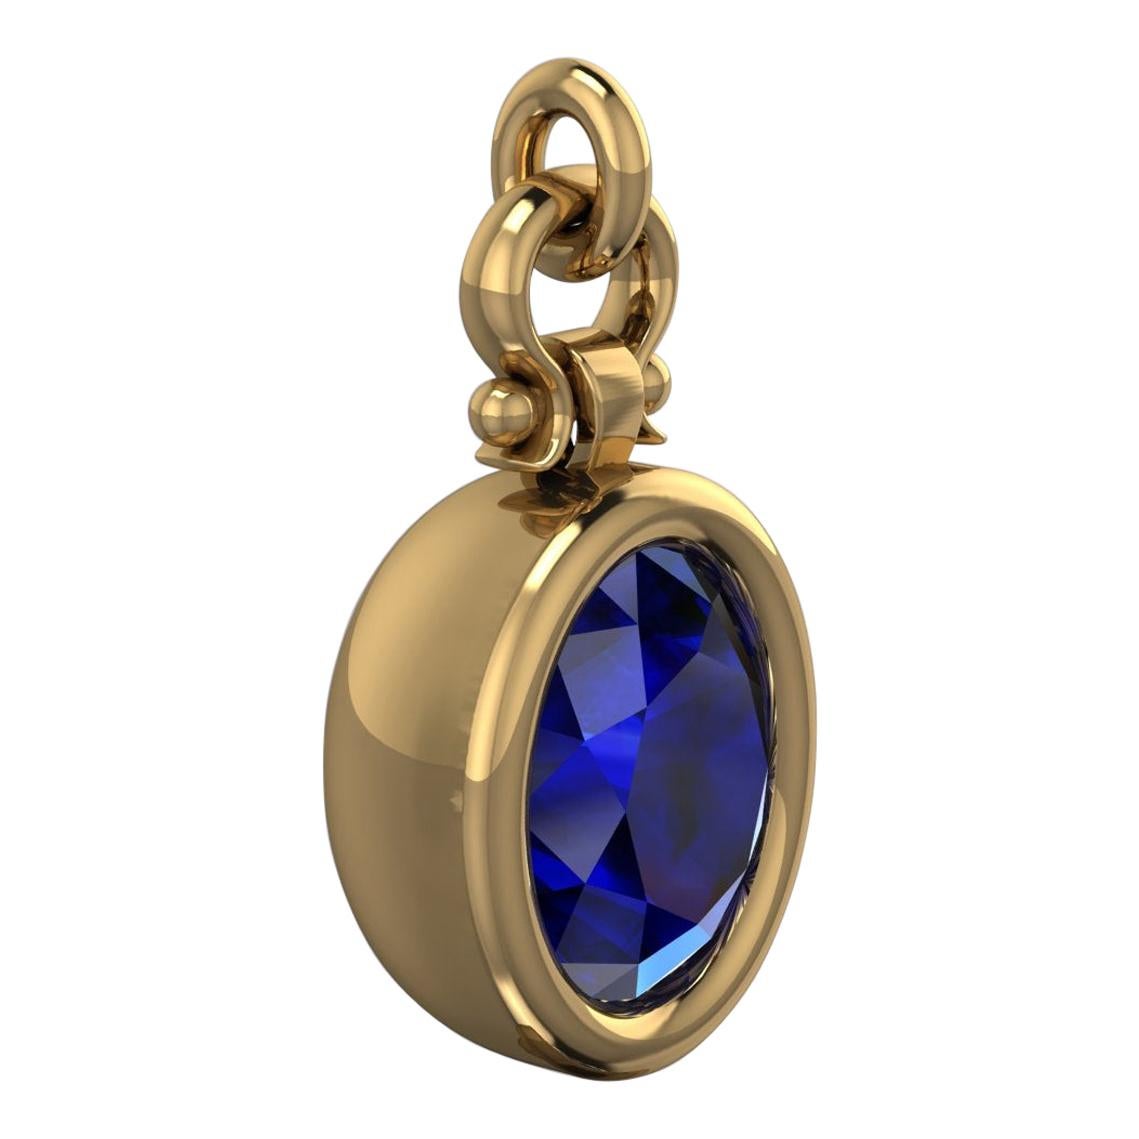 Berberyn Certified 3.27 Carat Oval Cut Blue Sapphire Pendant Necklace in 18k